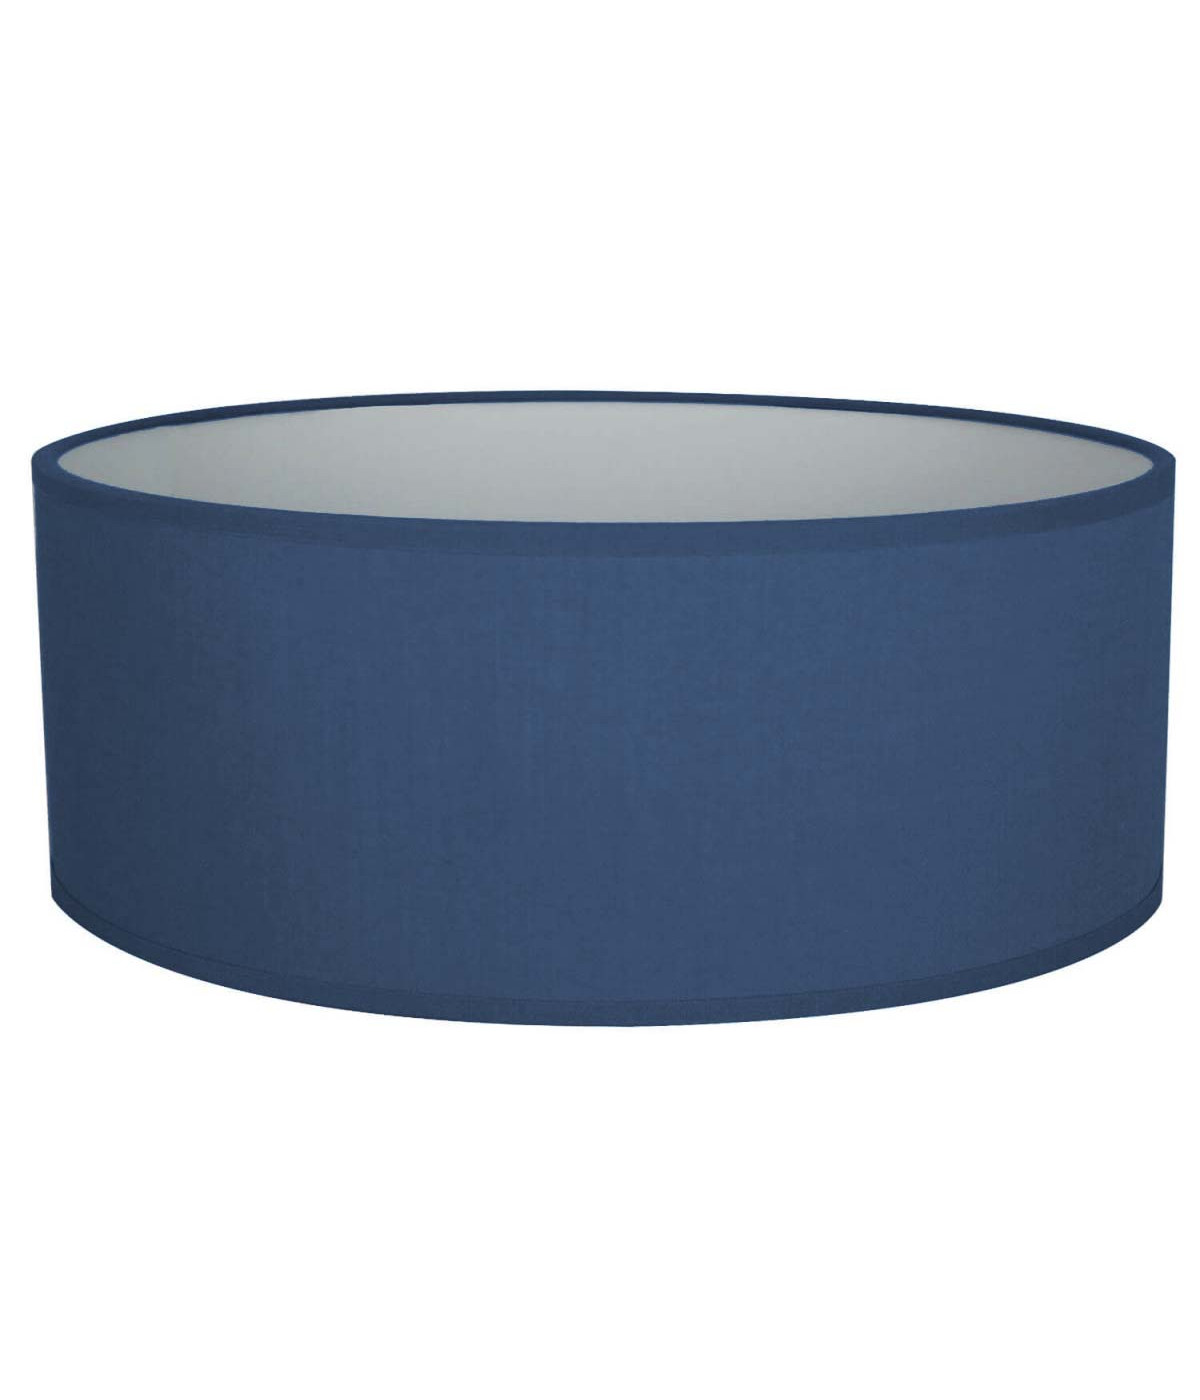 Medium Blue Oval Shade